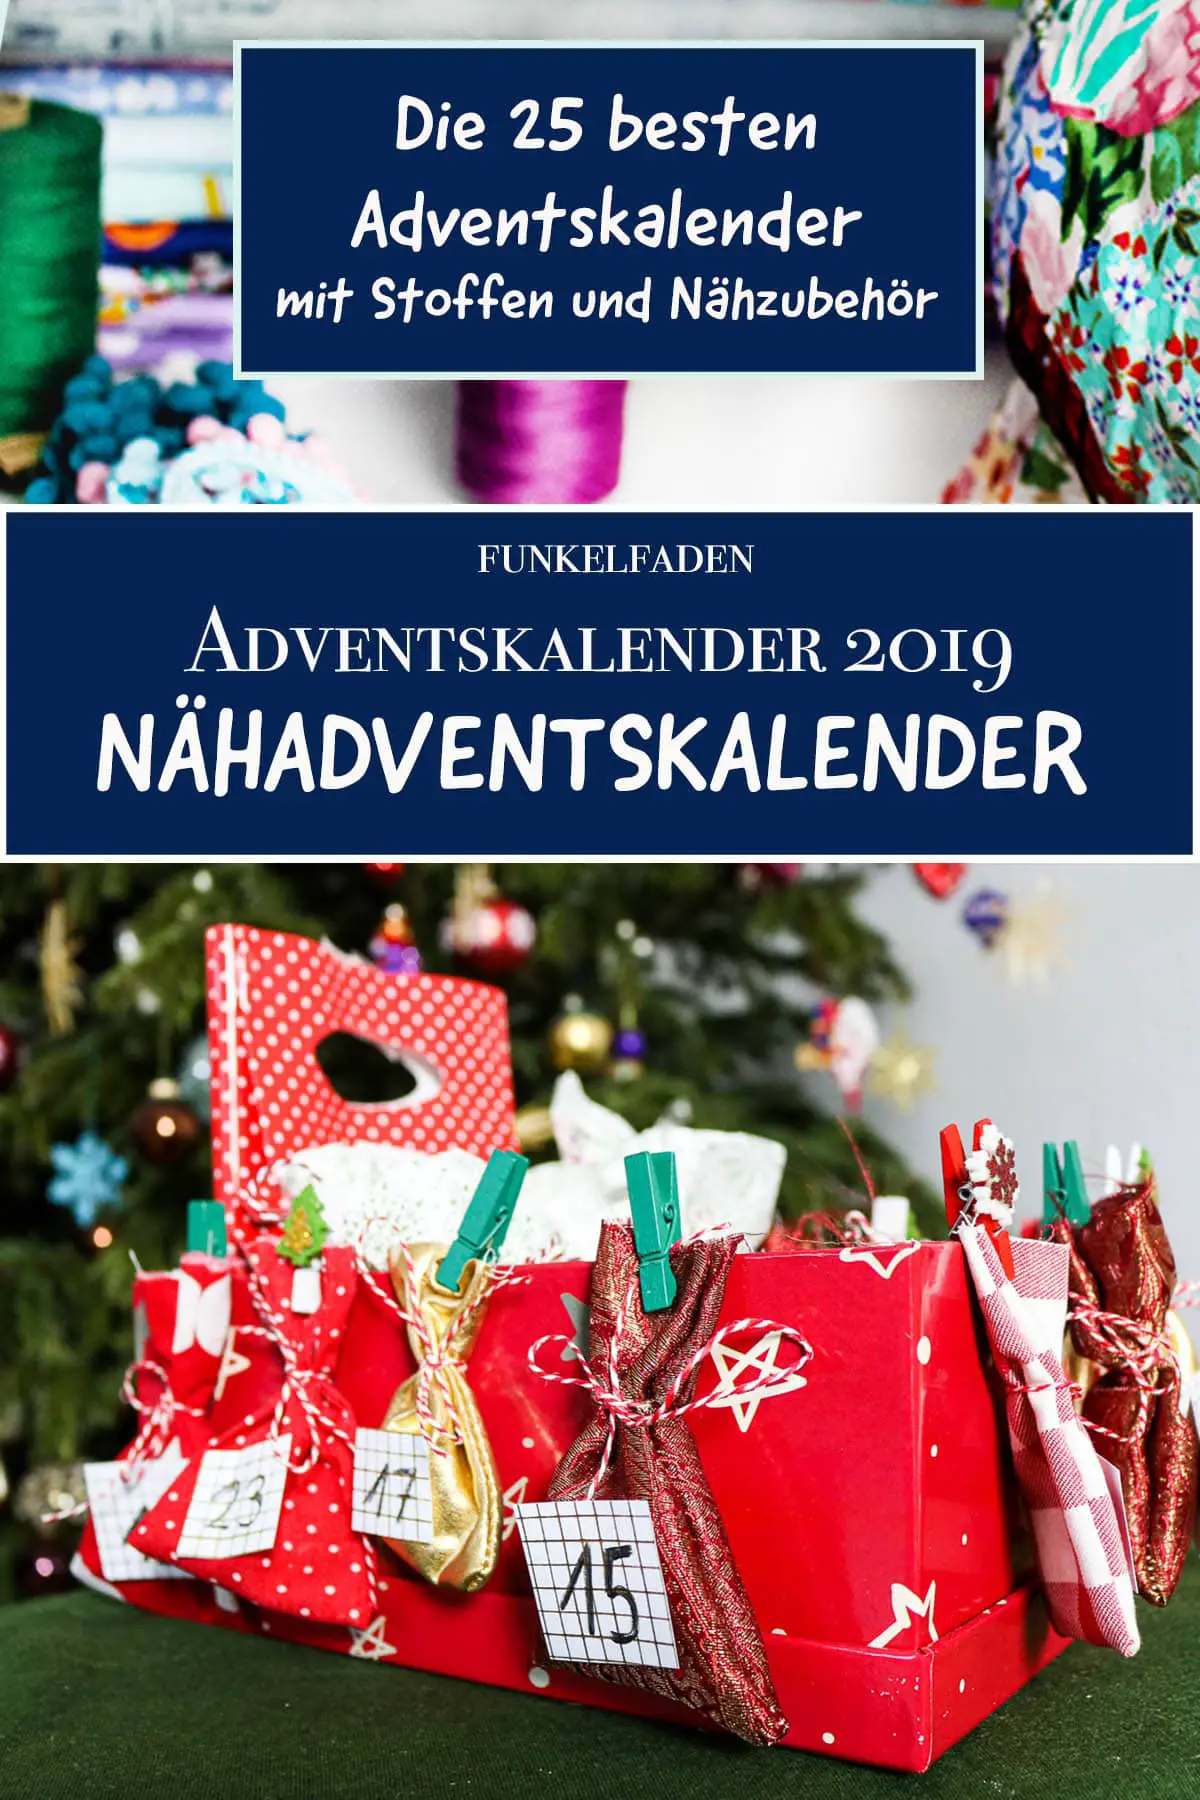 Die besten Näh-Adventskalender 2019